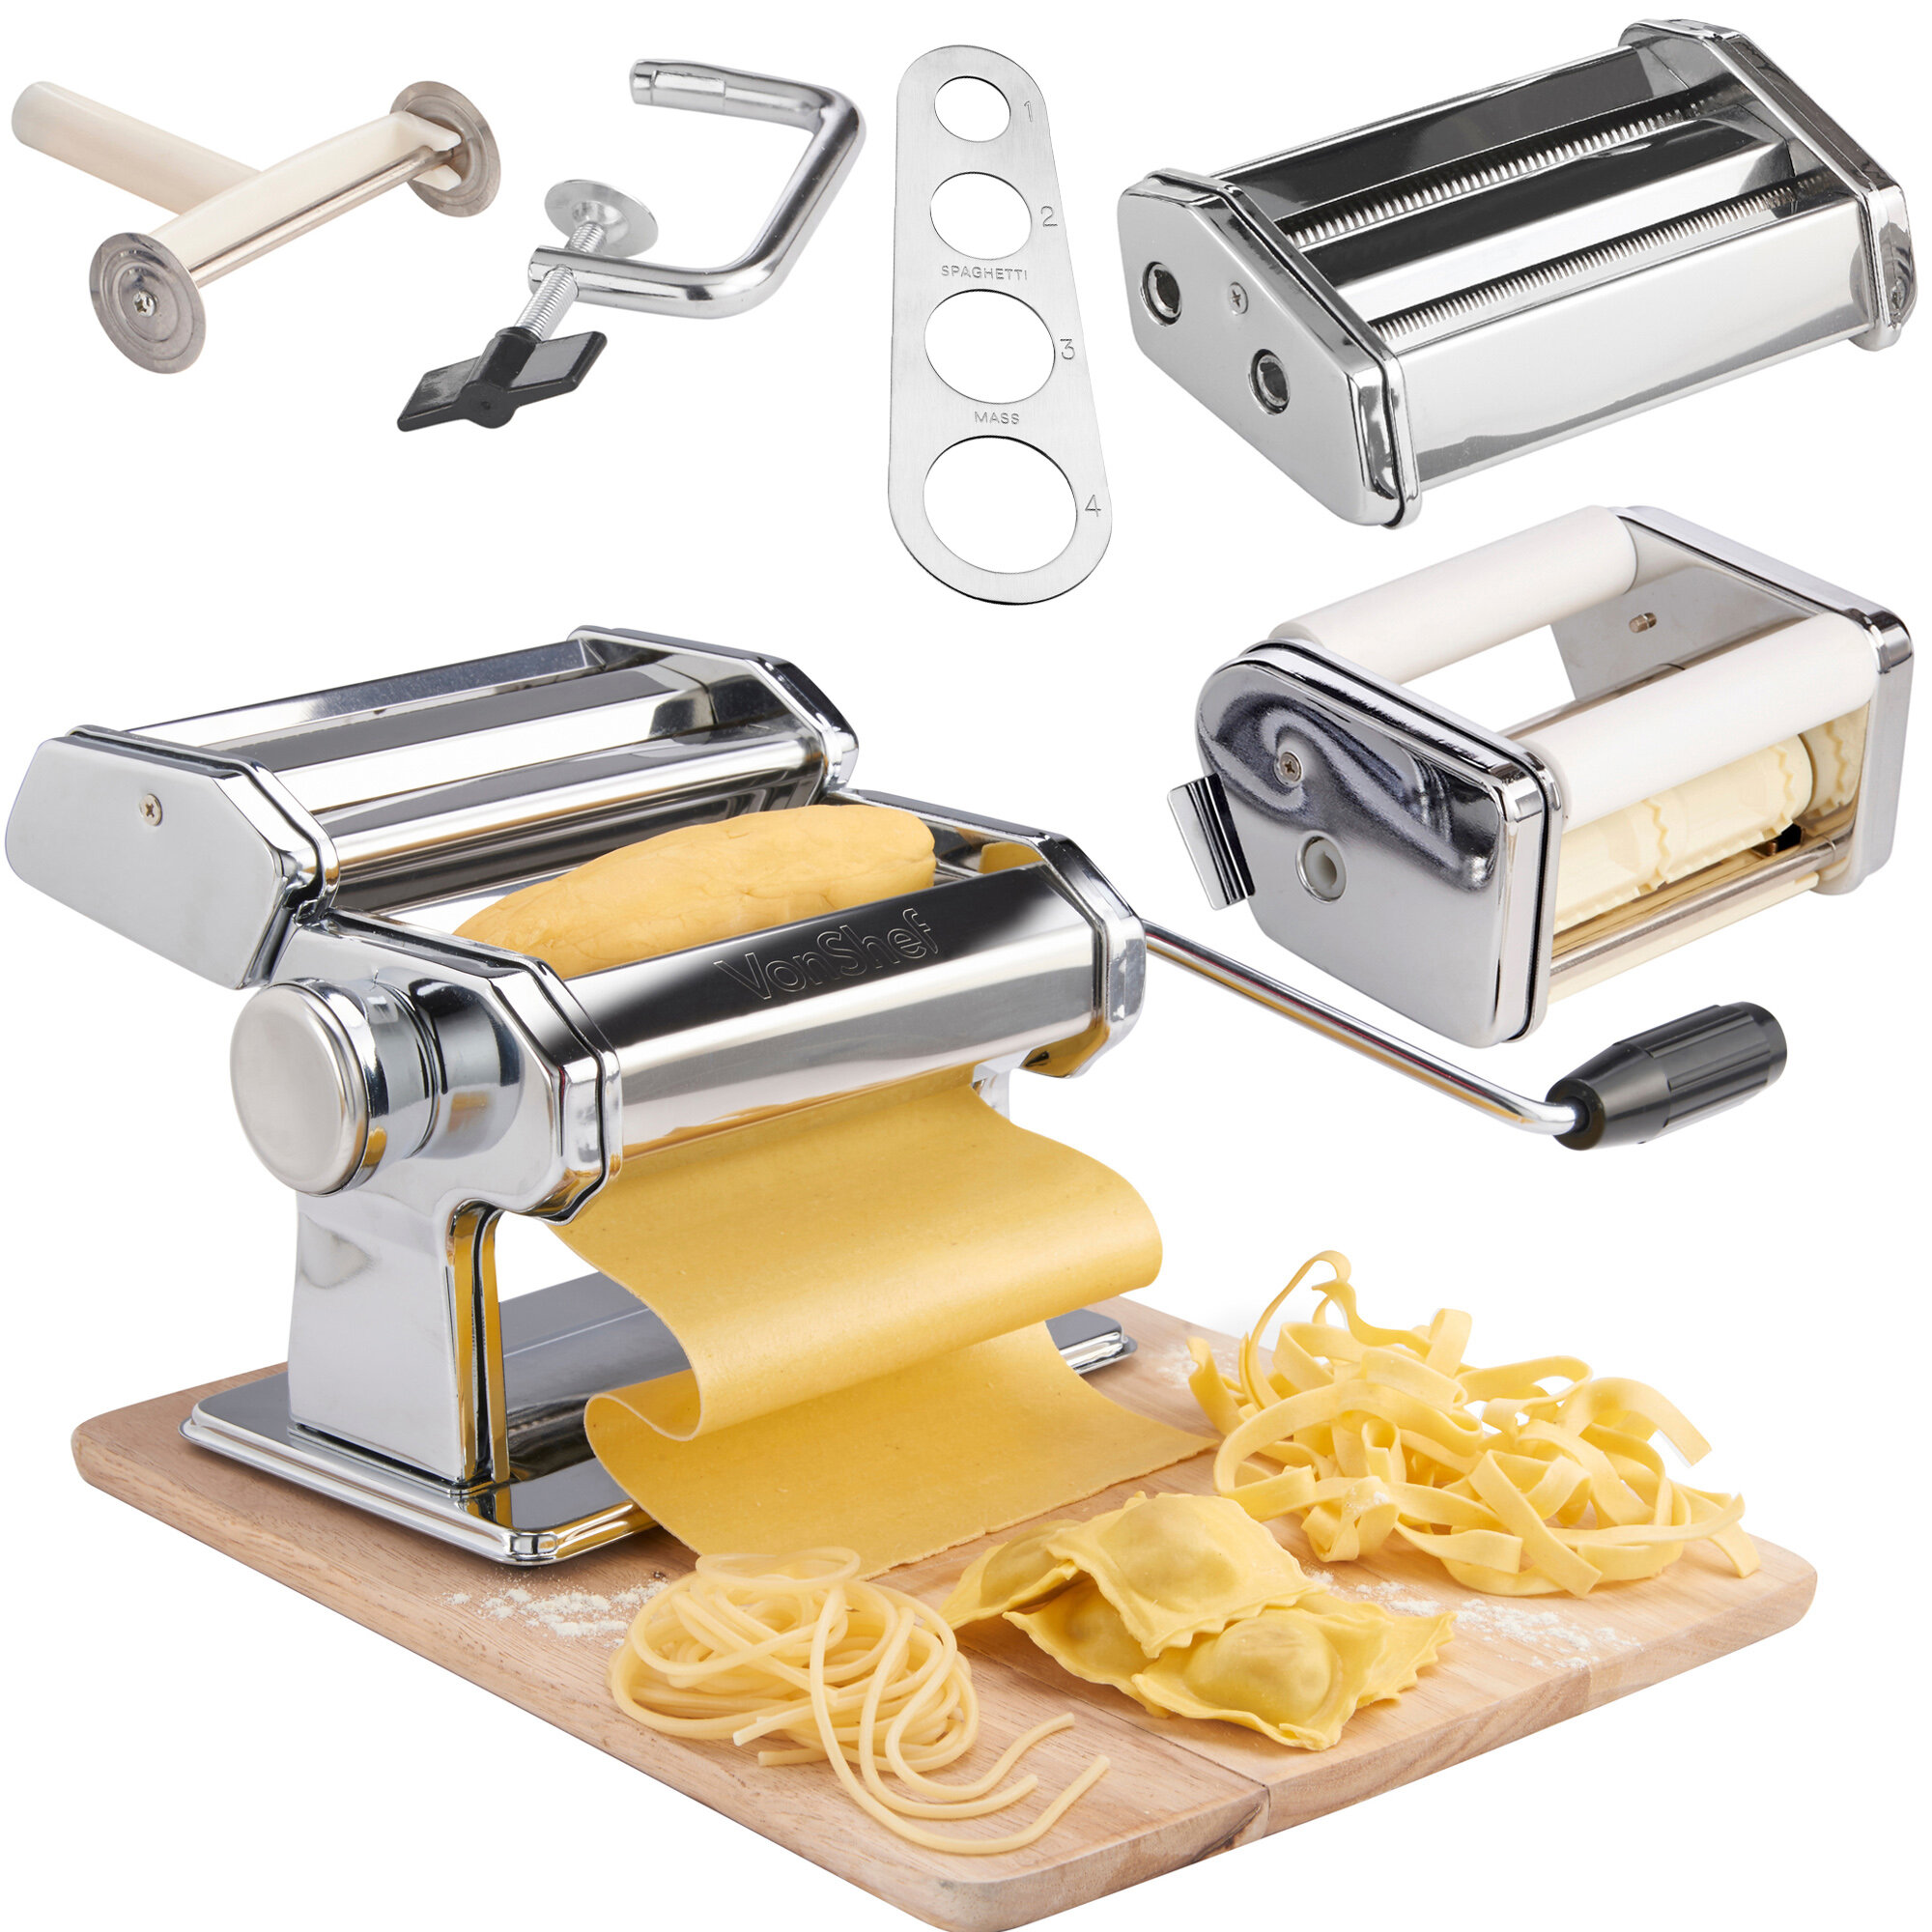 Pasta Maker Machine by Imperia- Deluxe Set W 2 Attachments, Star Ravioli Mold